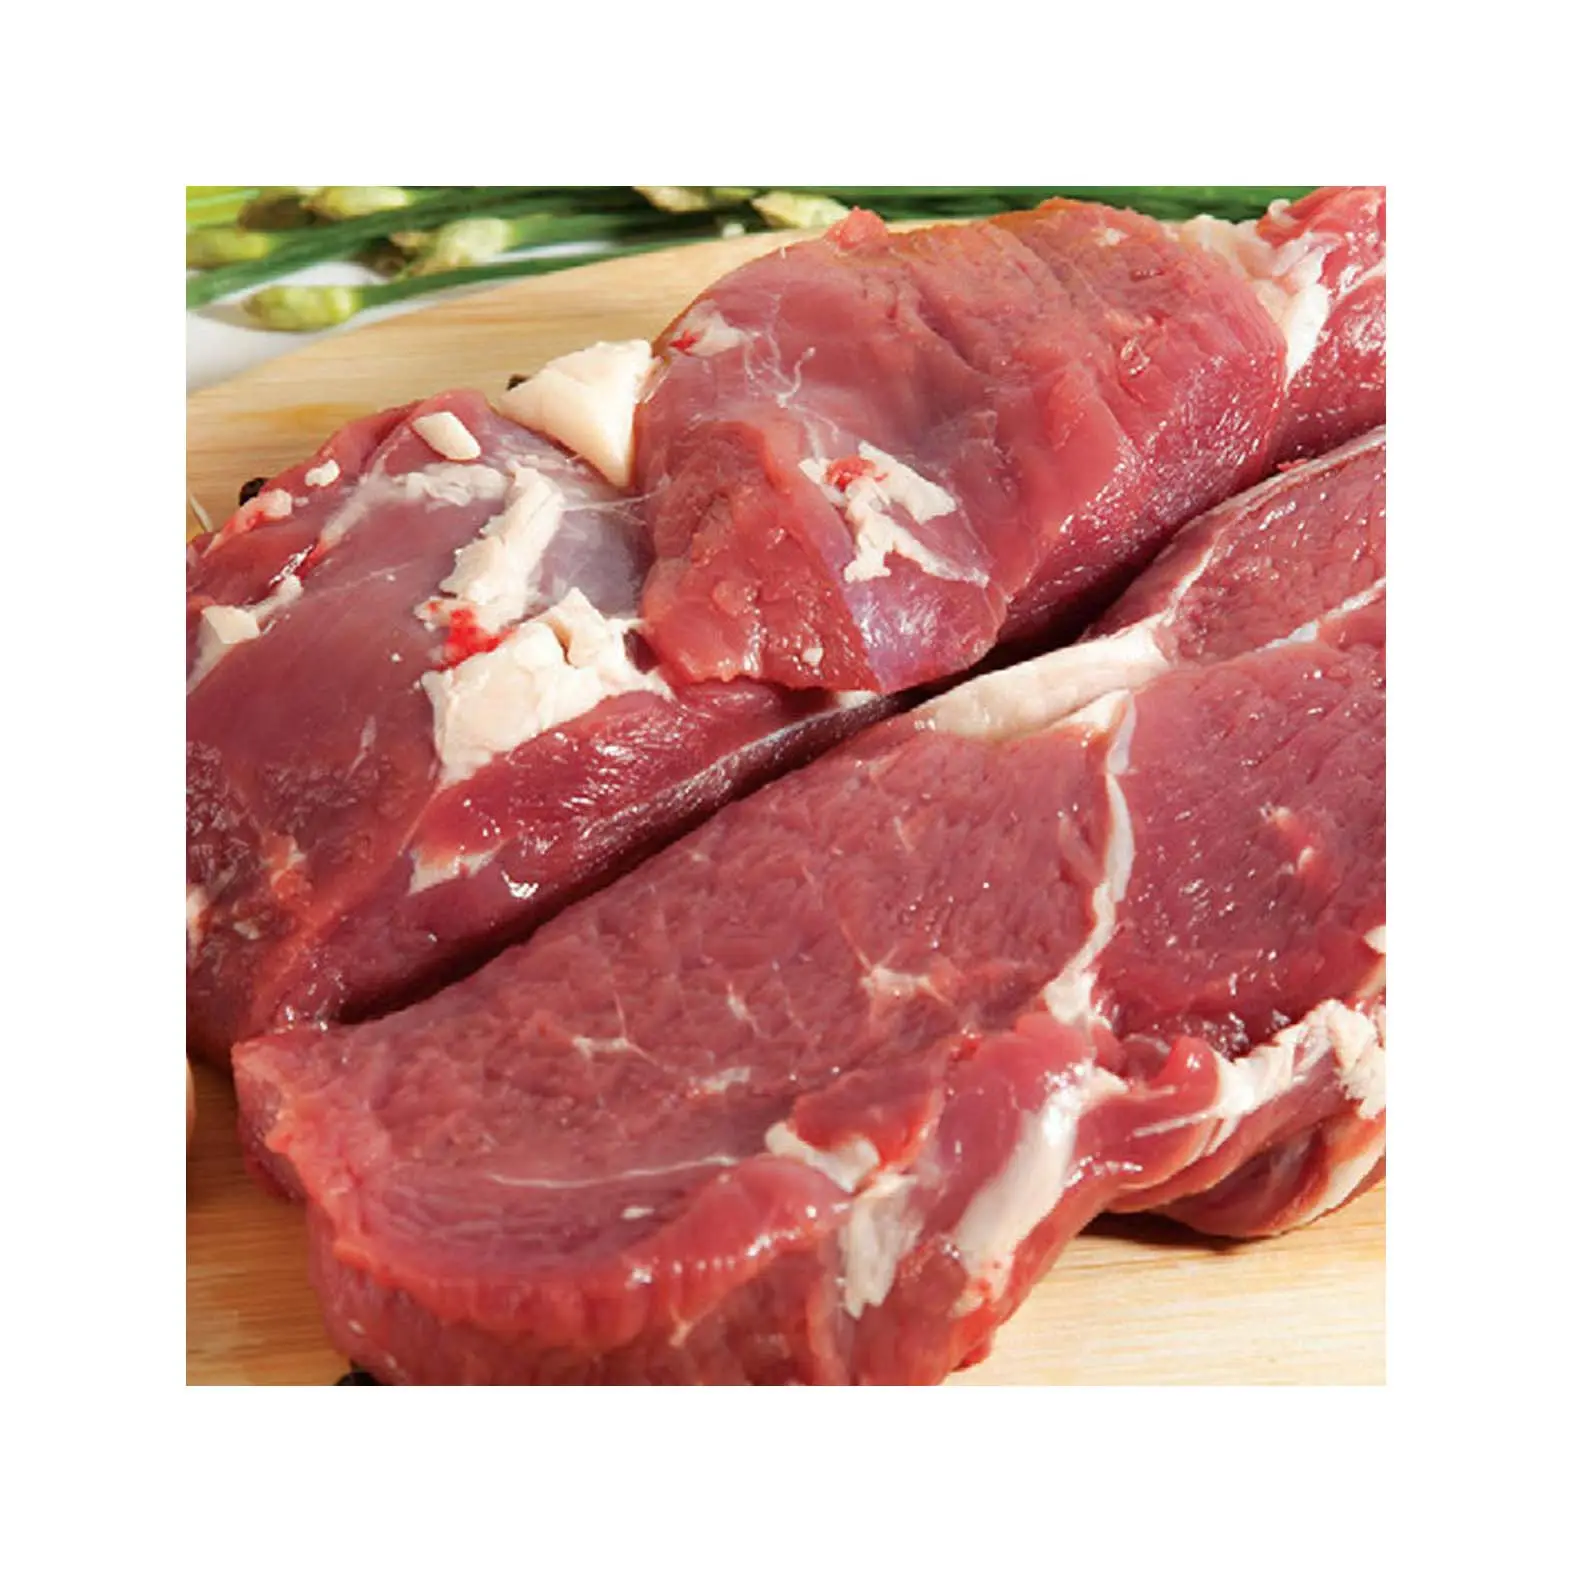 ताजा हलाल भैंस के बोनलेस मांस में ताजा हलाल भैंस बोनलेस मांस का ताजा जमे हुए भैंस का मांस, ताजा जमे हुए भैंस का मांस हलाल